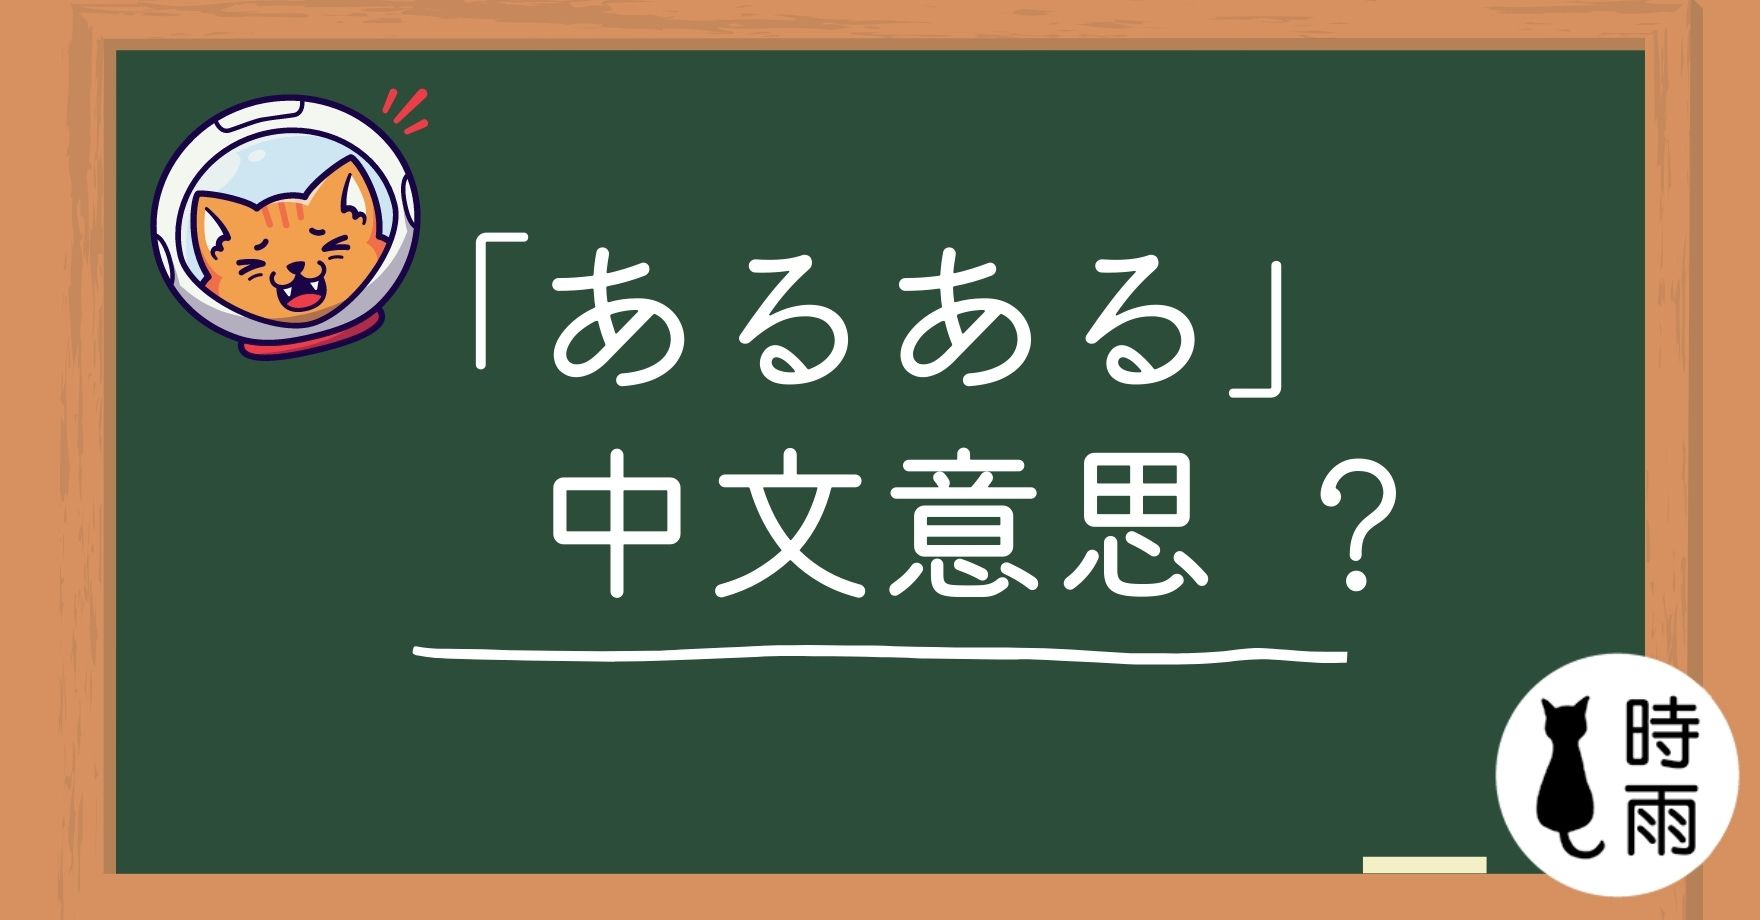 日文「あるある」的意思是什麼？